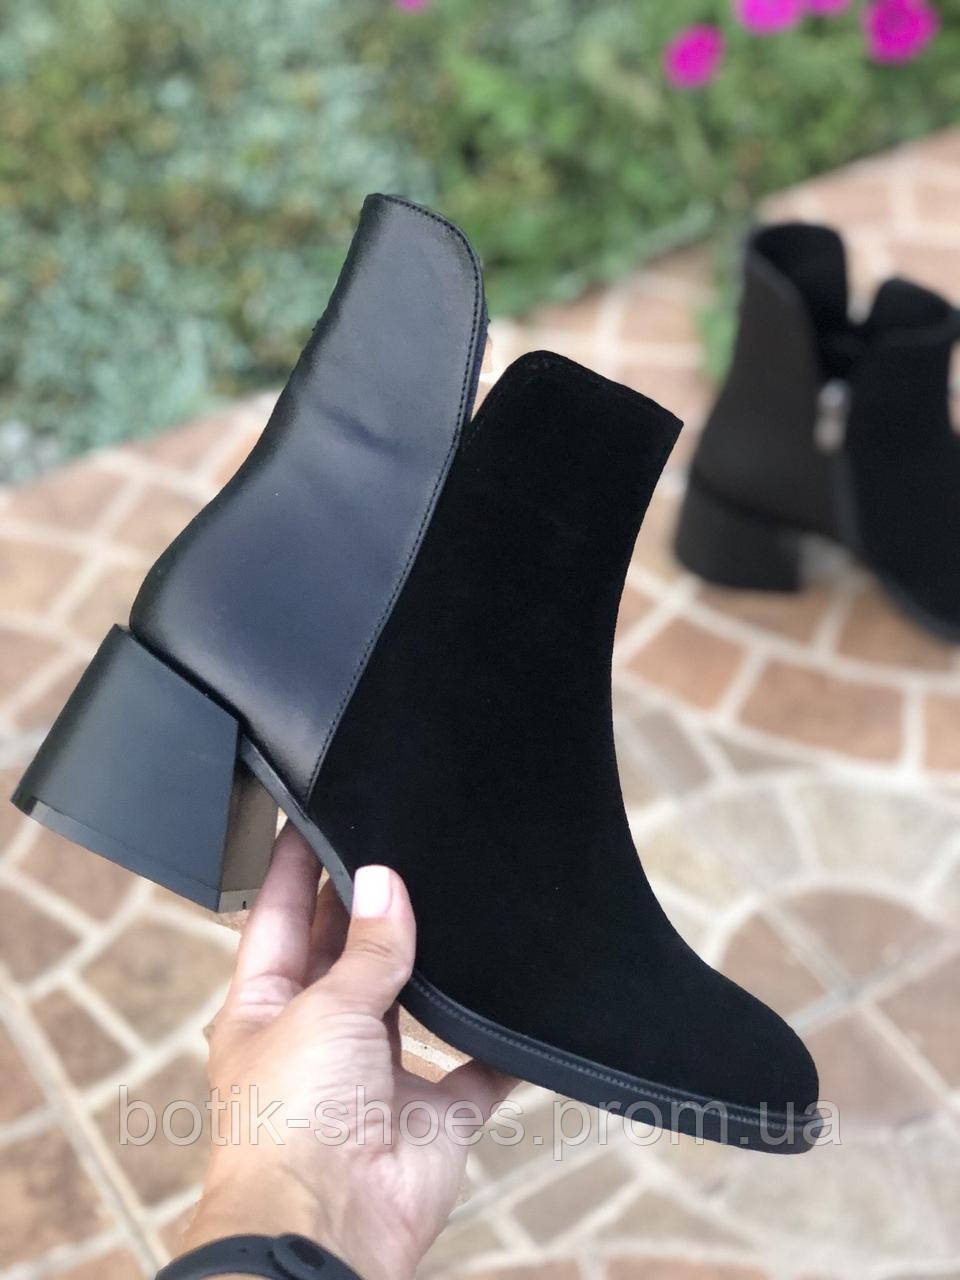 Шкіряні ботильйони черевики замшеві жіночі натуральні класичні на зручному середньому каблуці гарні чорні 40 розмір M.KraFVT 5065